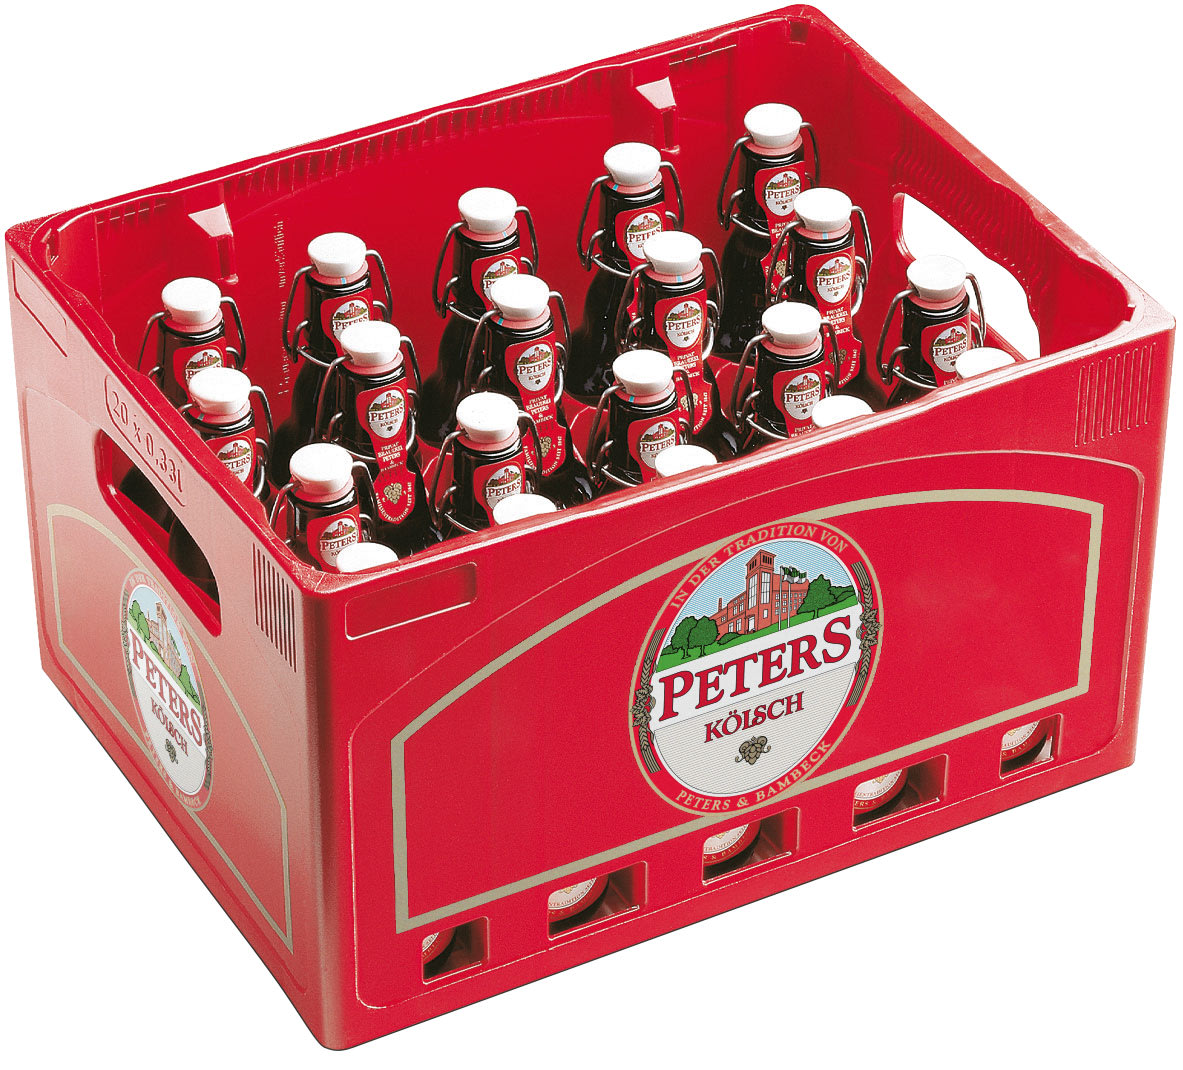 Peters Kölsch Bier Bügel Kasten 20 x 0,33 l Glas Mehrweg